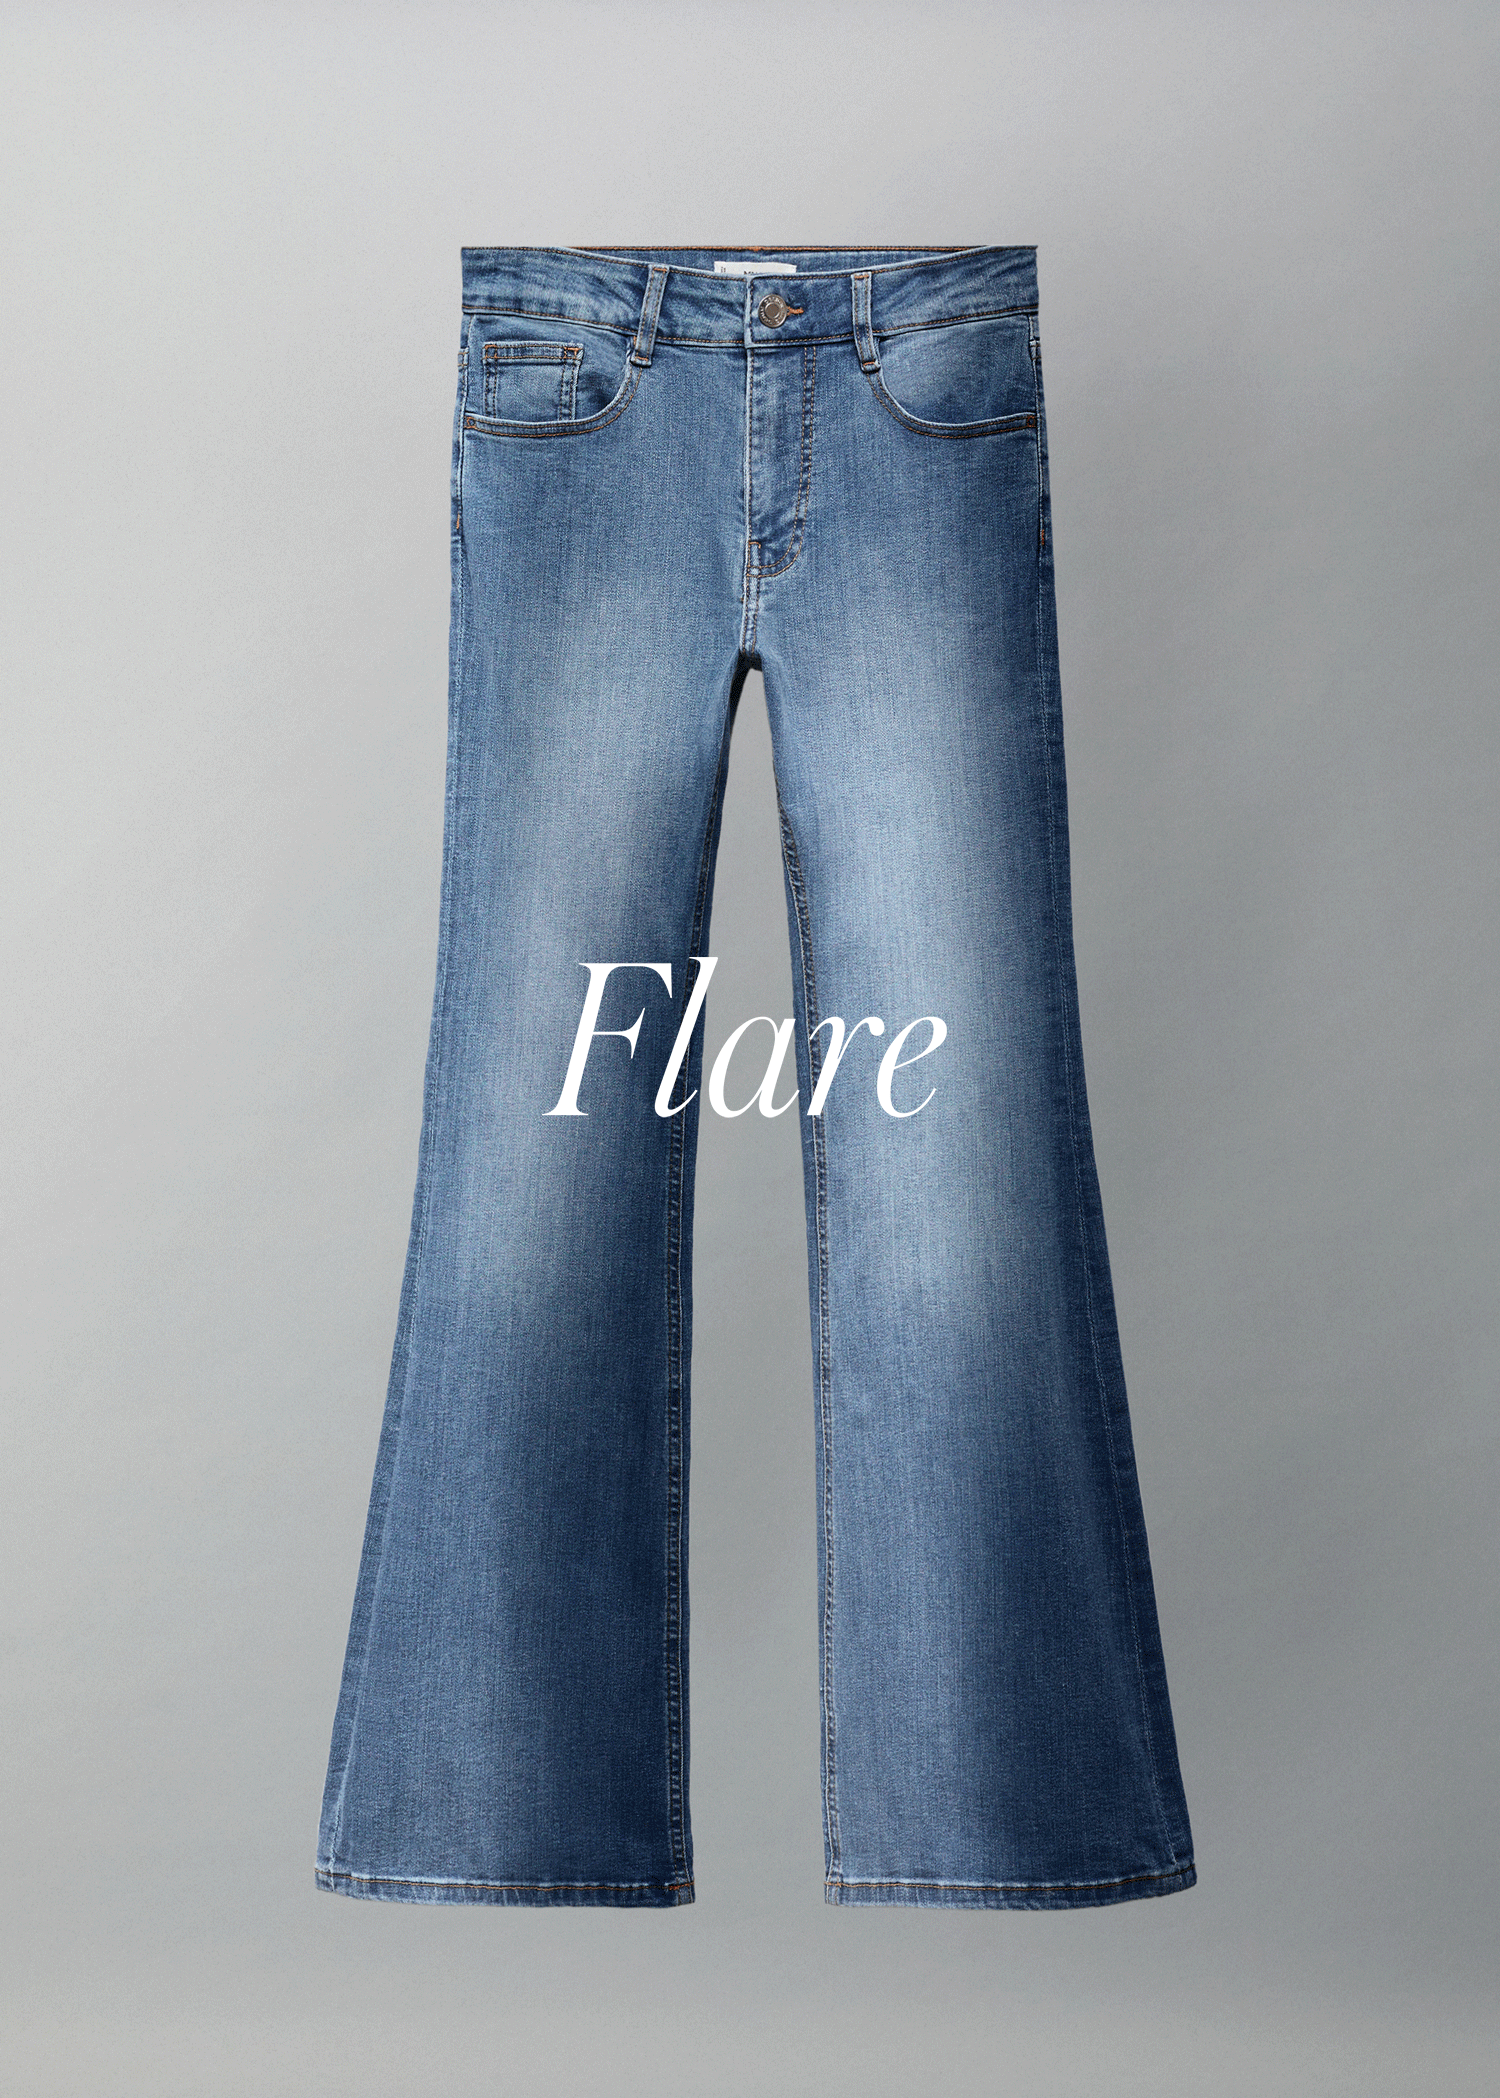 Jeans flare - Detalle del artículo 9